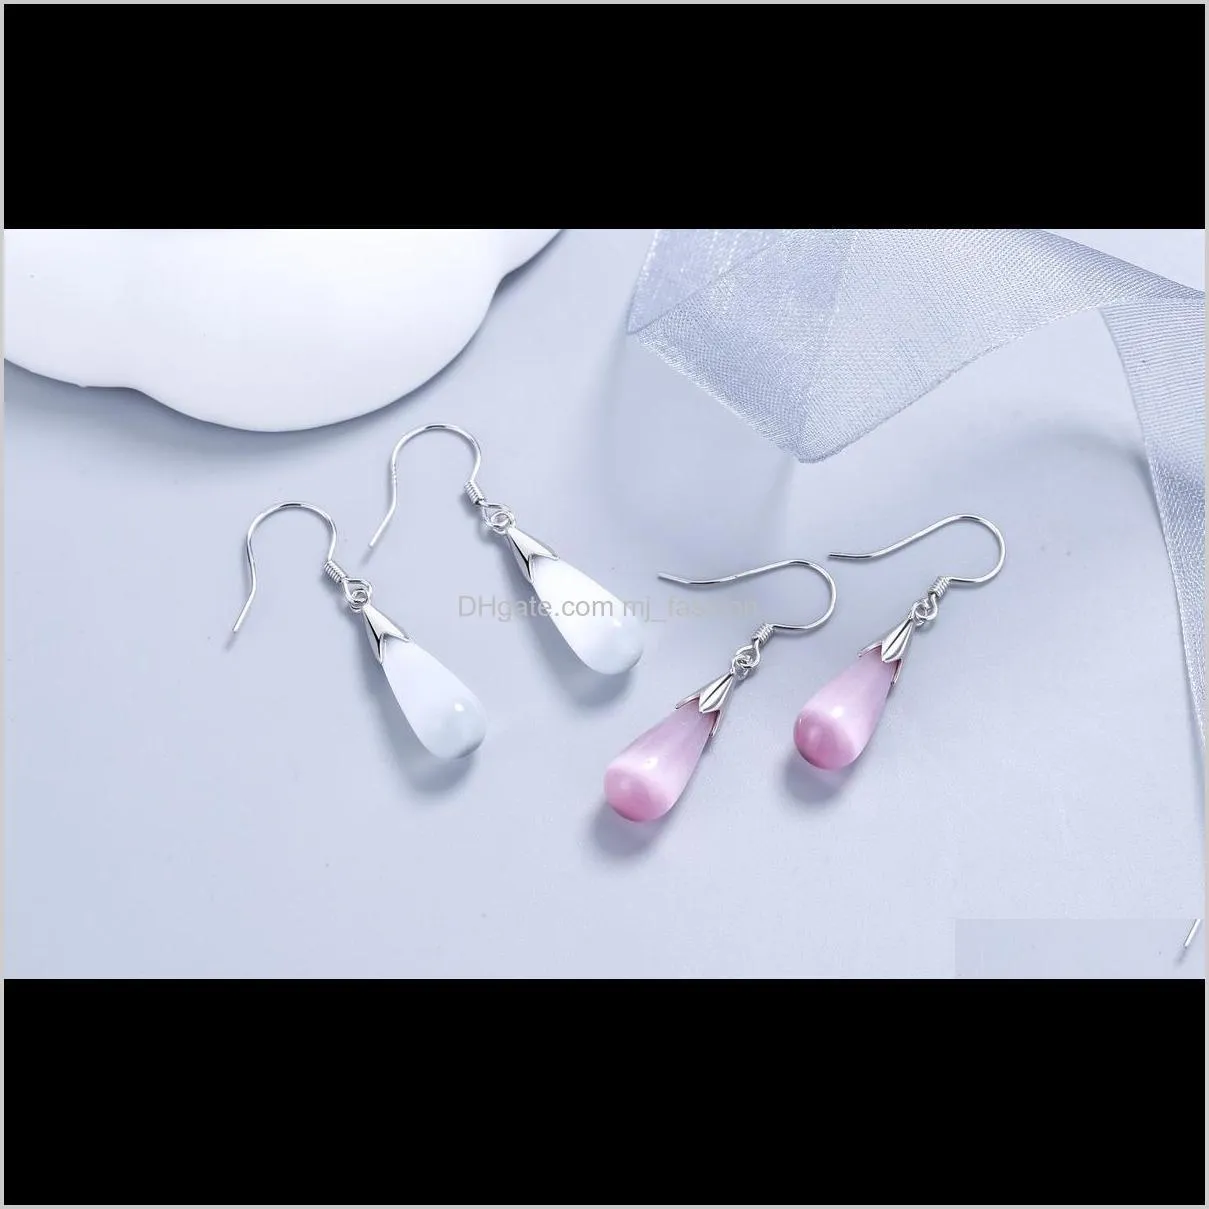 water drop earrings opal earrings 925 sterling silver earring big water drop necklaces wedding jewelry sets for women designer